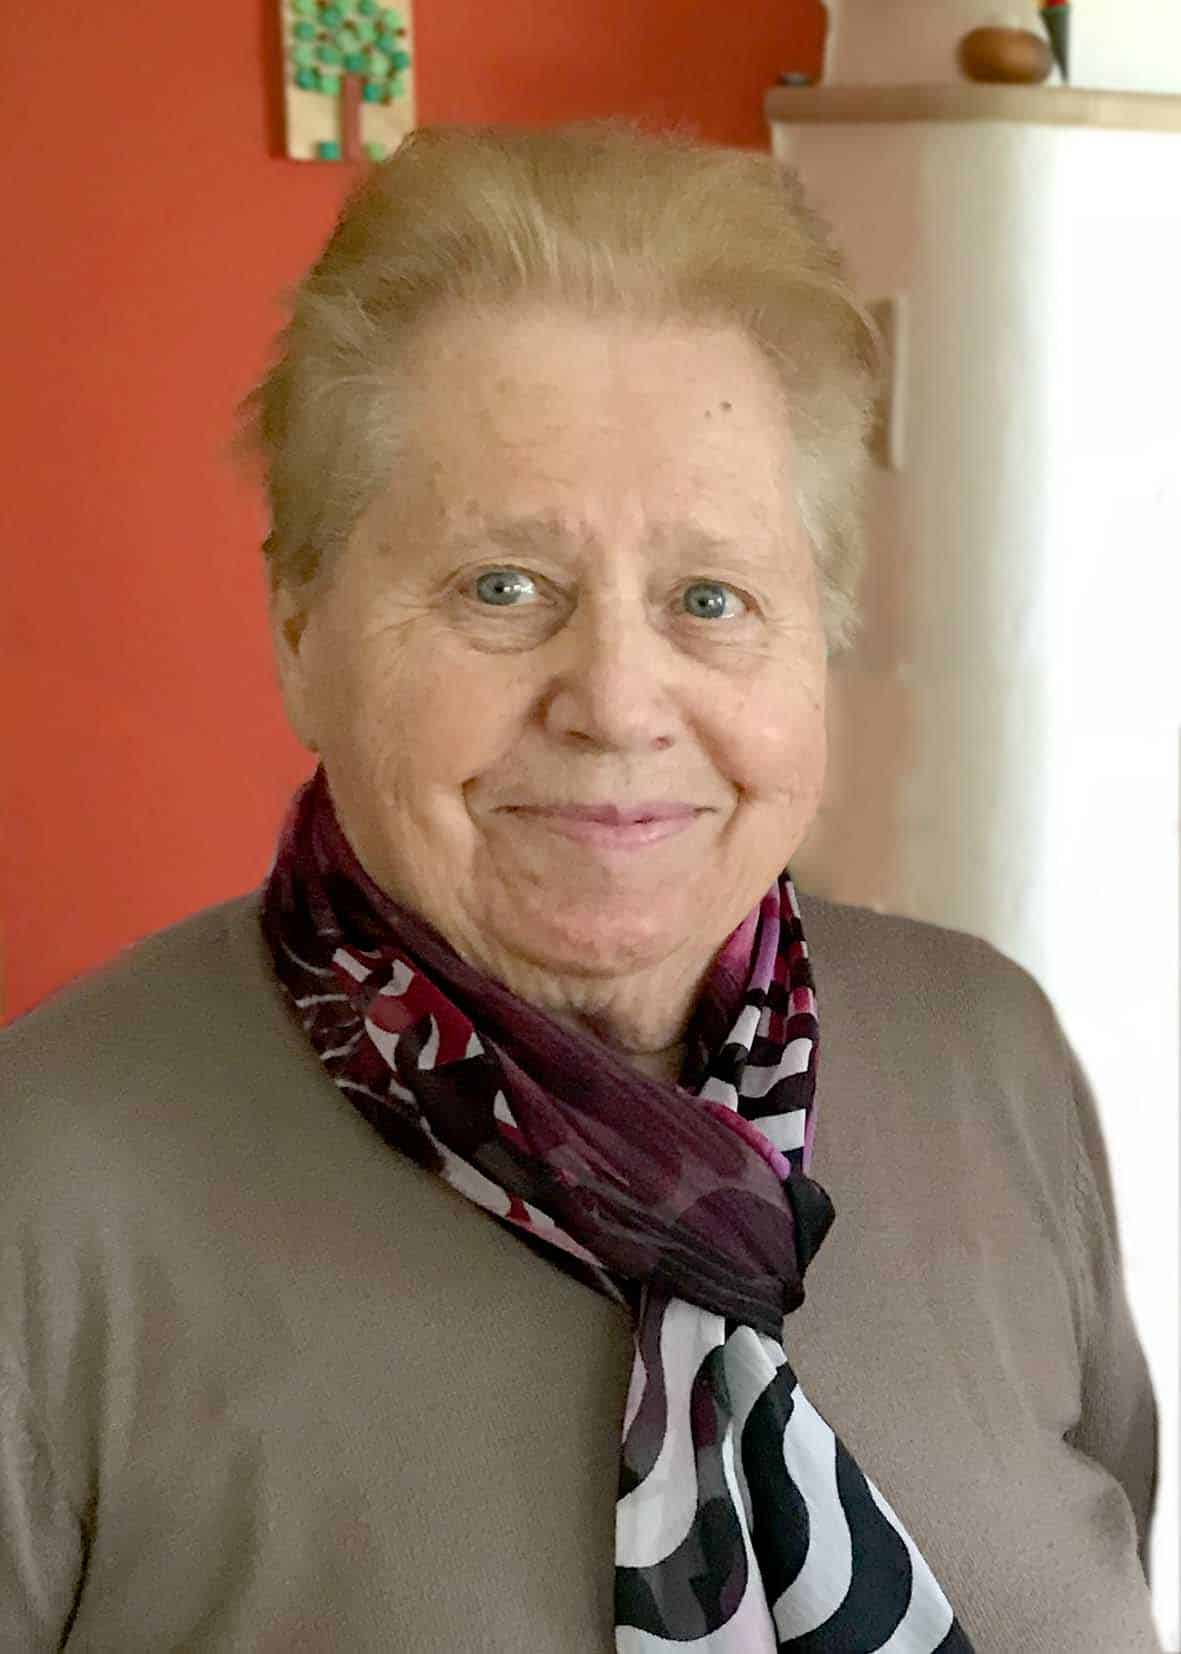 Gertrude Aichinger (90)